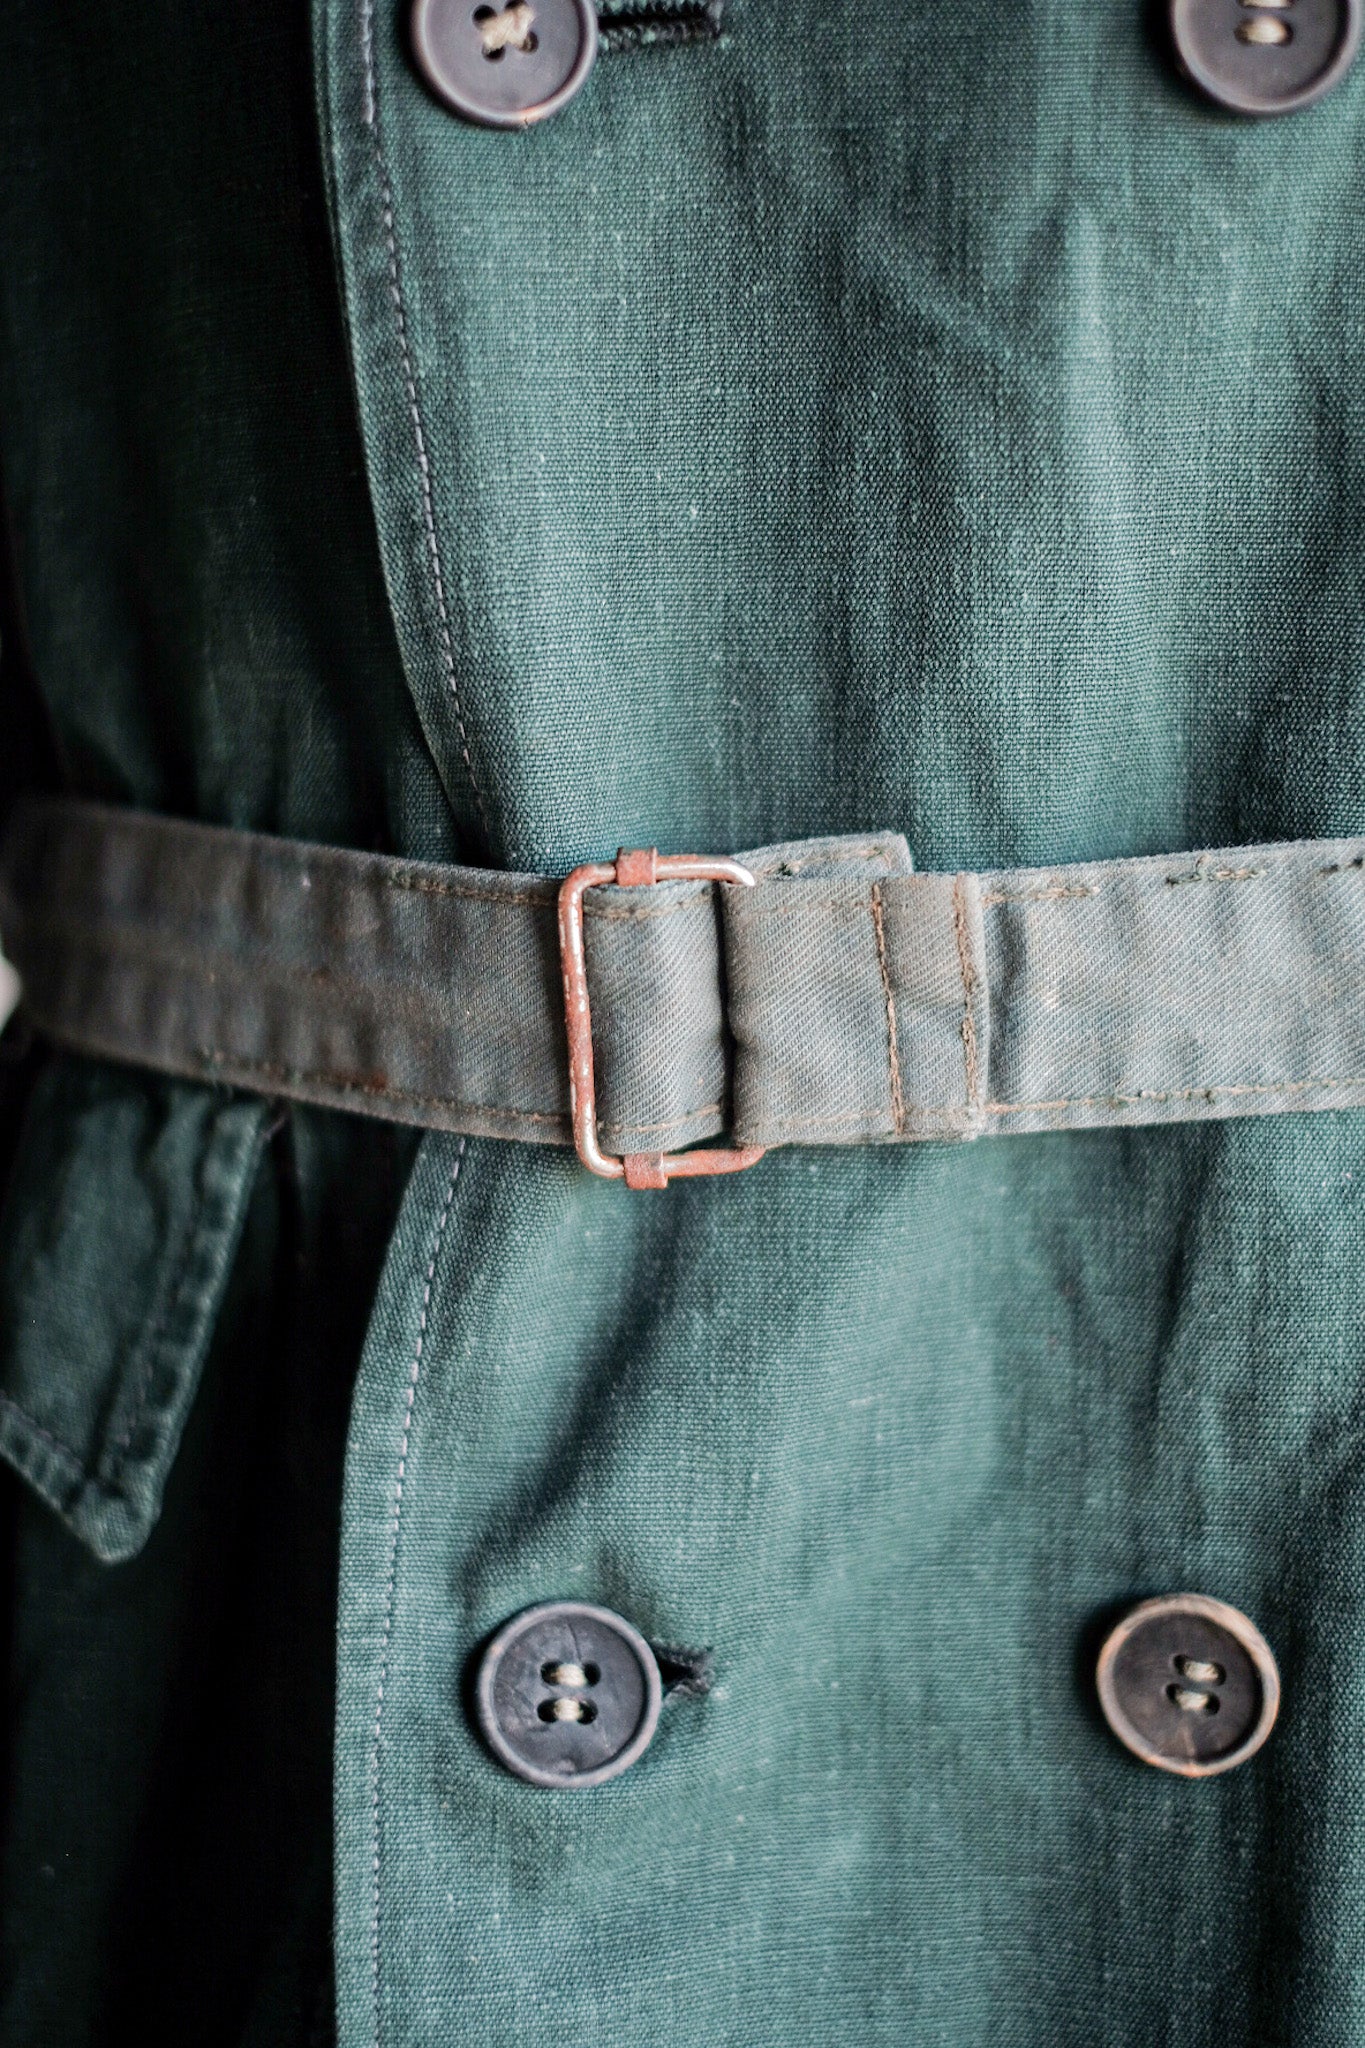 [~ 40 '] 프랑스 군대 더블 가슴 그린 리넨 캔버스 재킷